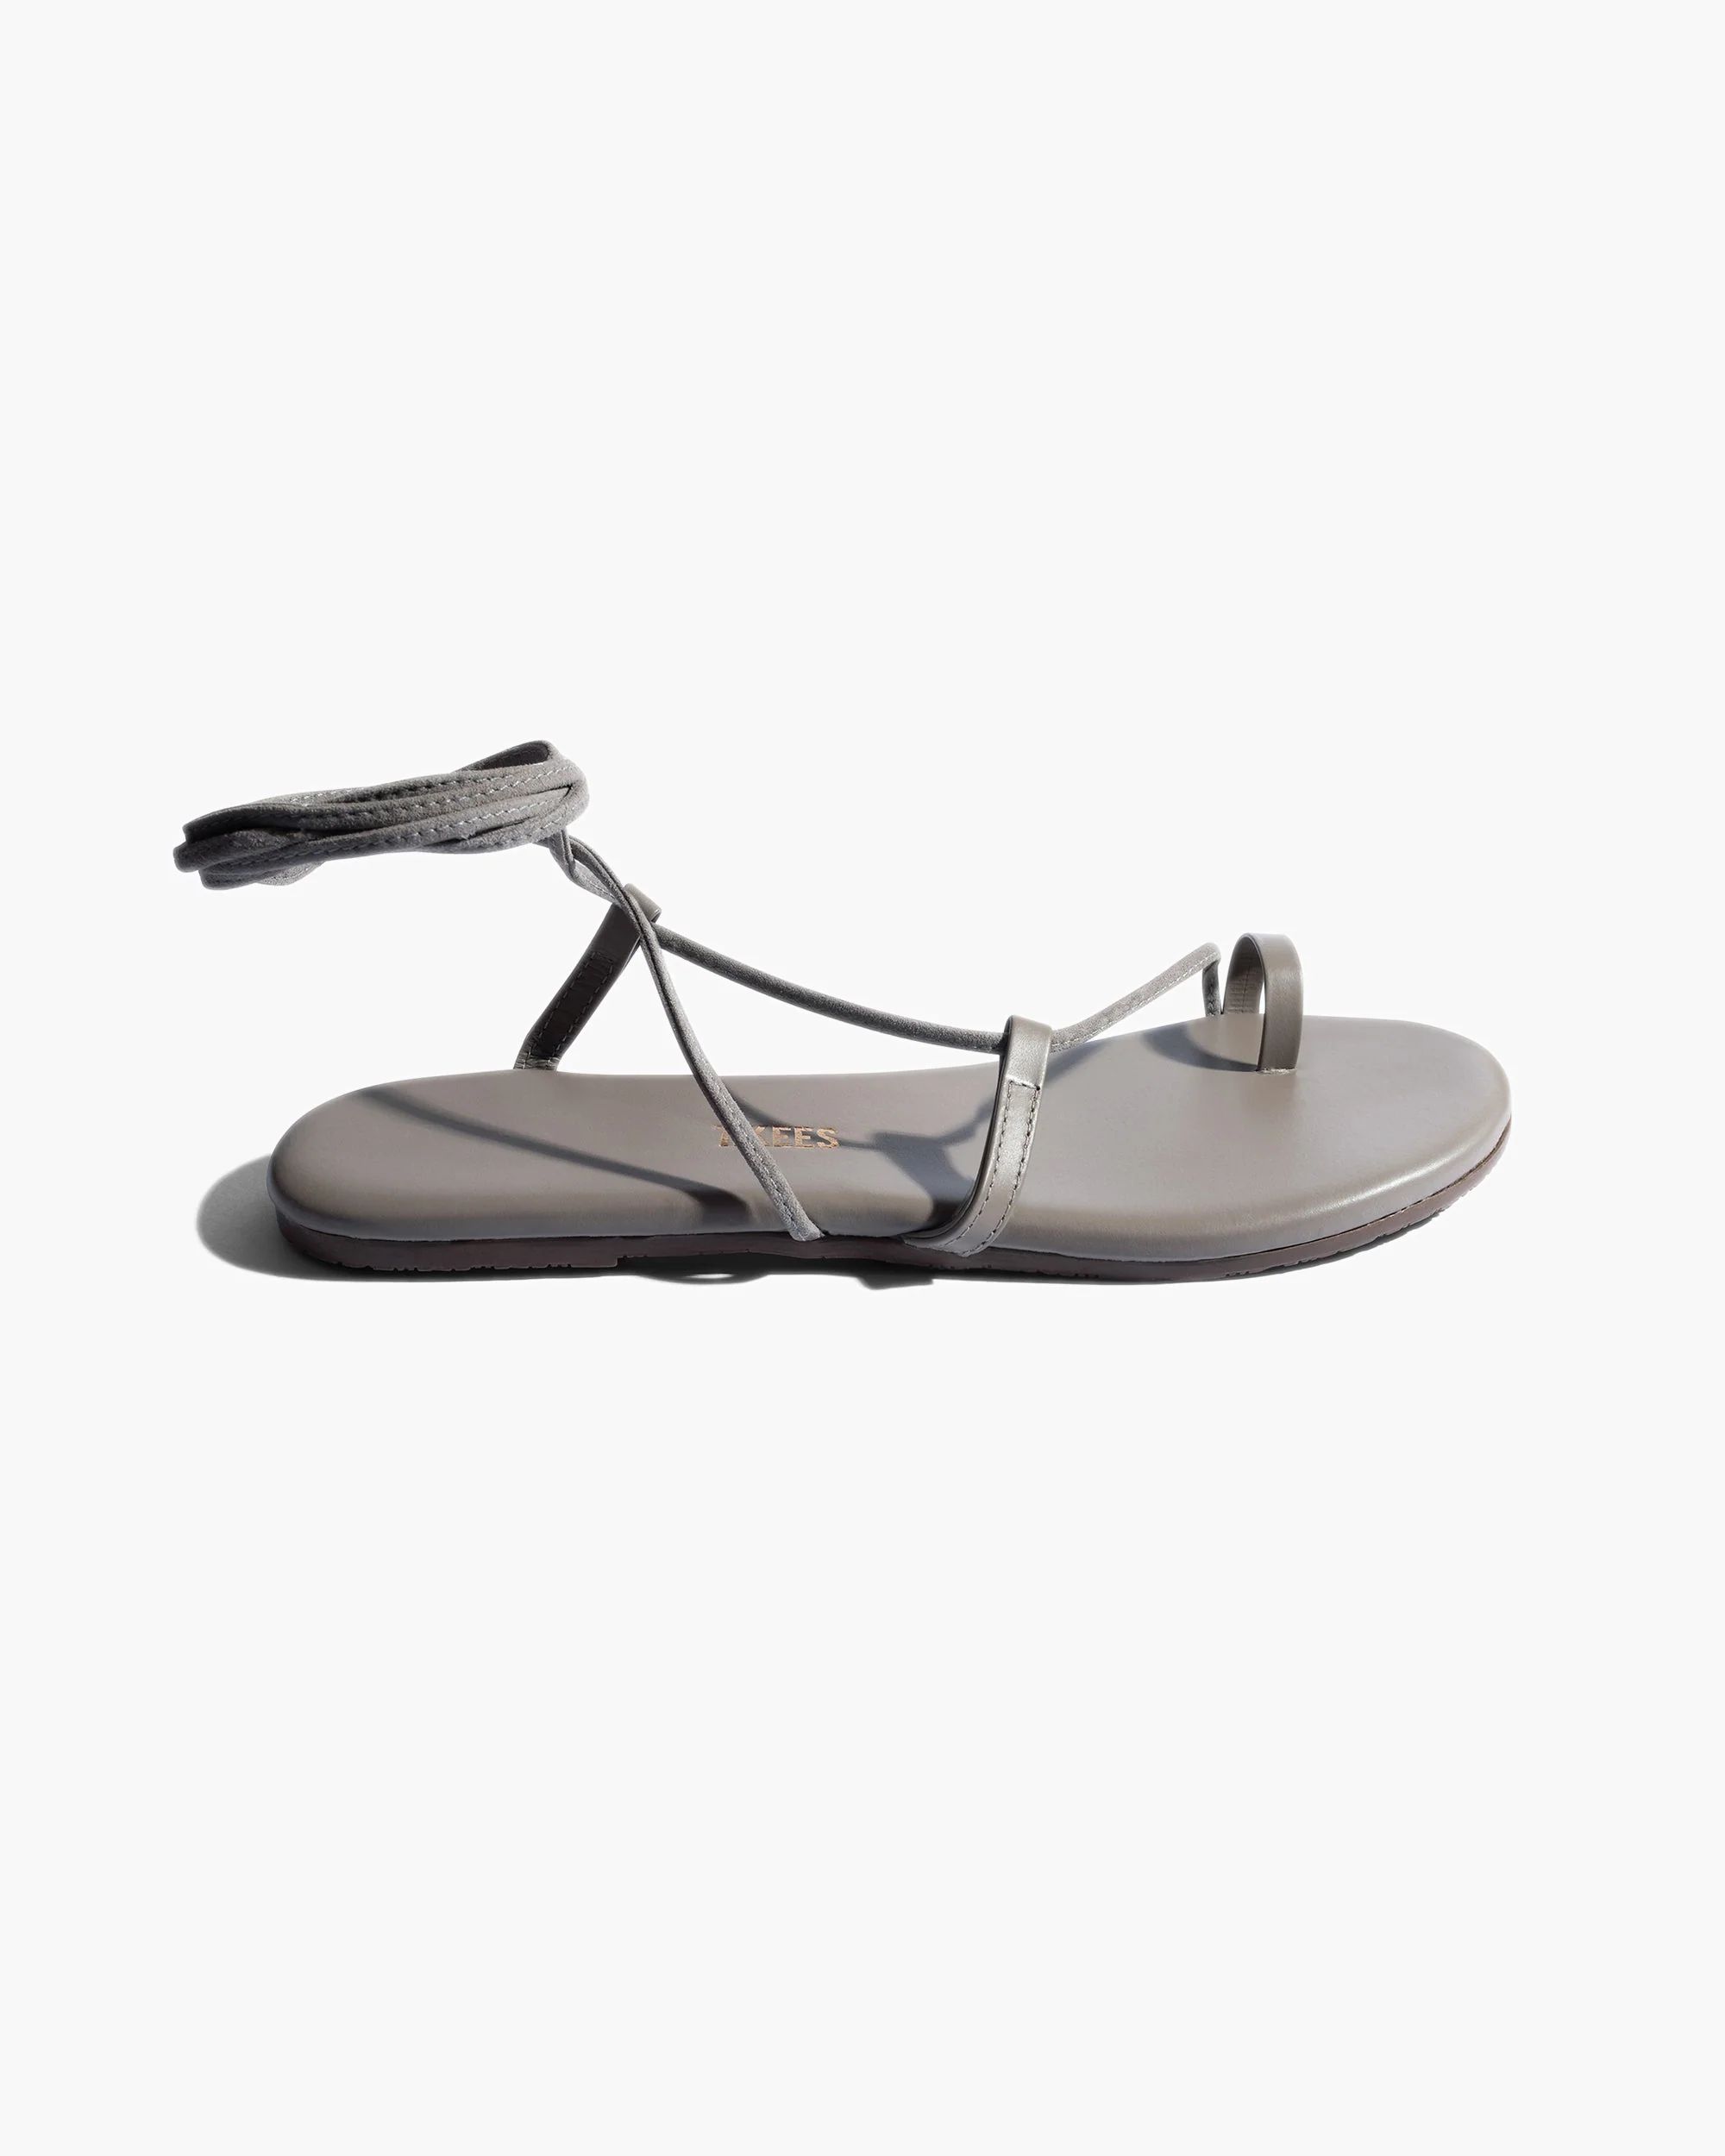 Jo in Fossil | Sandals | Women's Footwear | TKEES